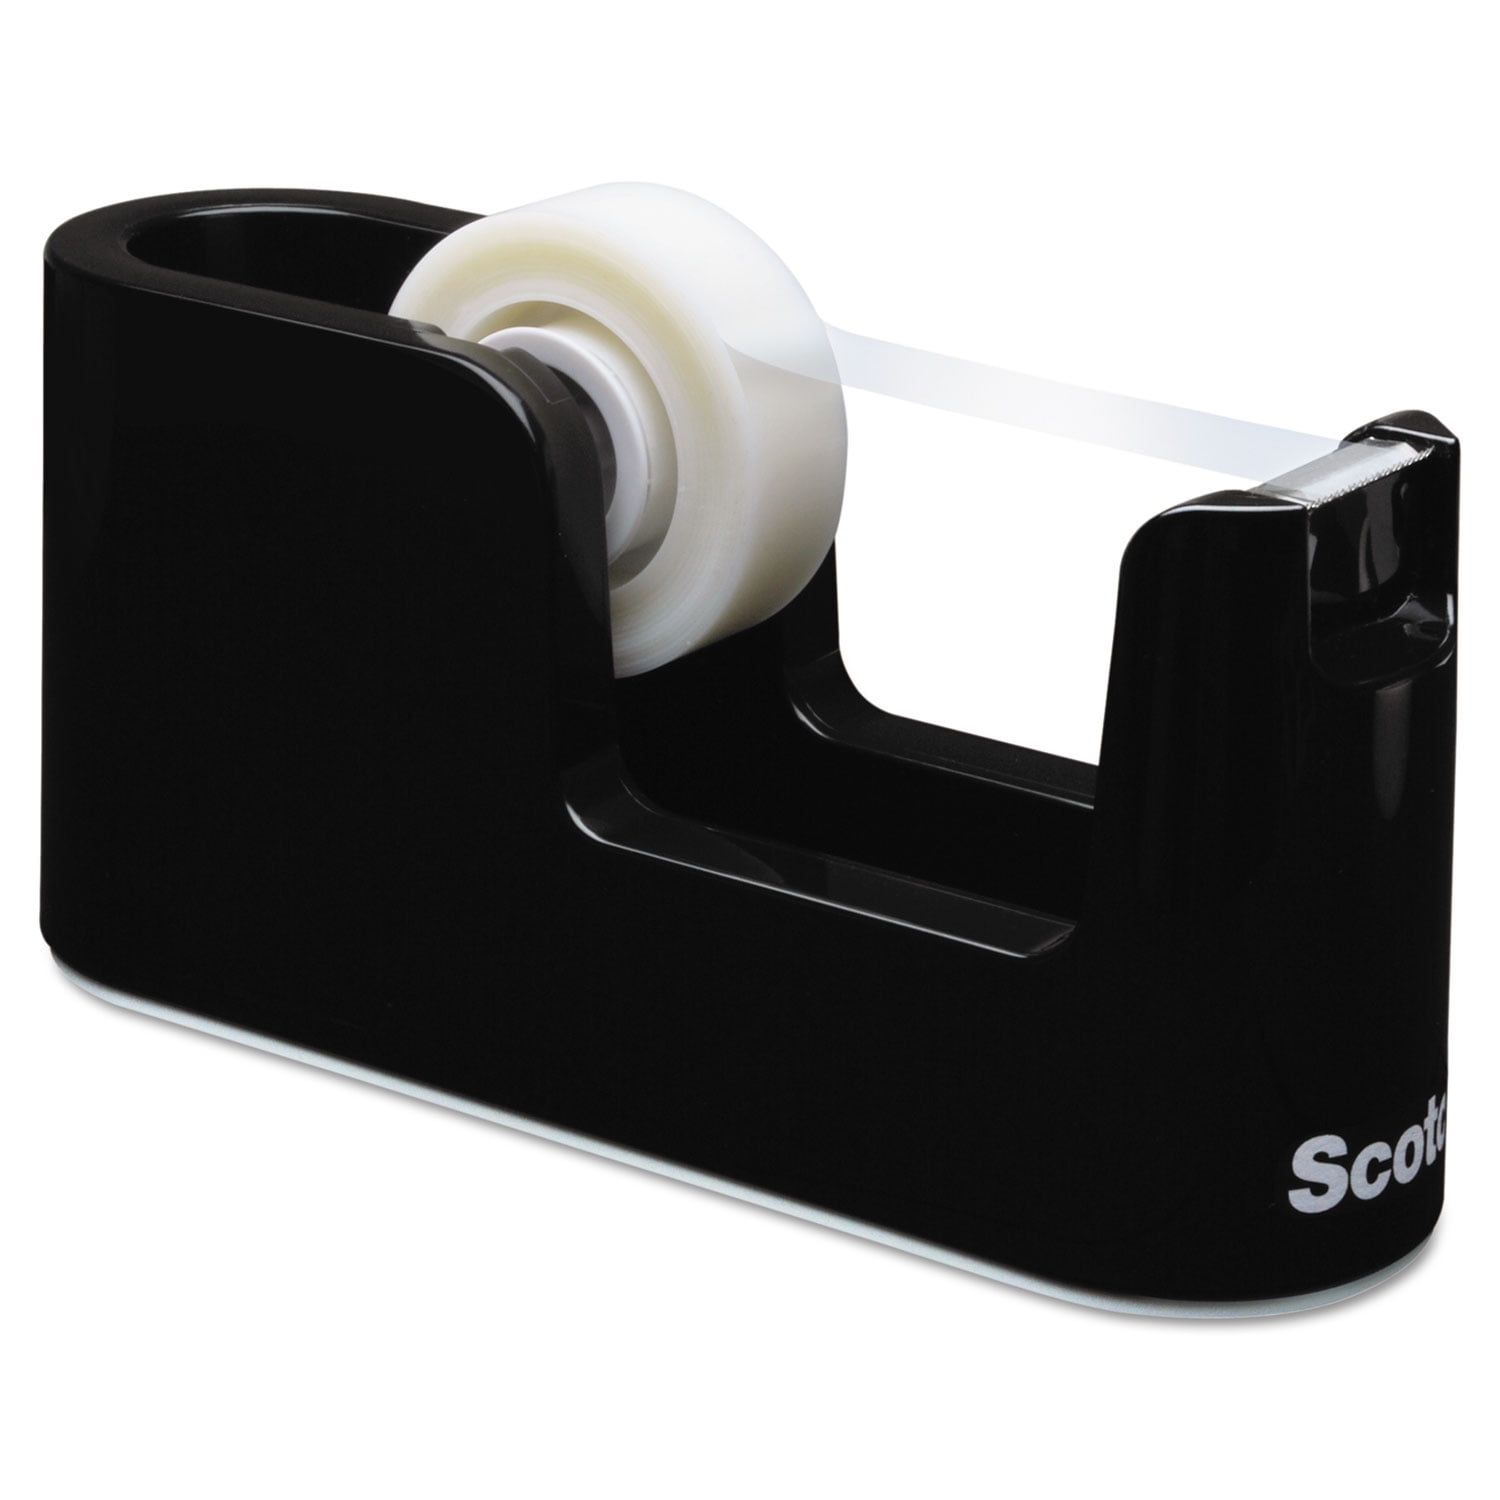 SCOTCH, Plastic, 1 in Max. Tape Wd, Desktop Tape Dispenser - 2A673